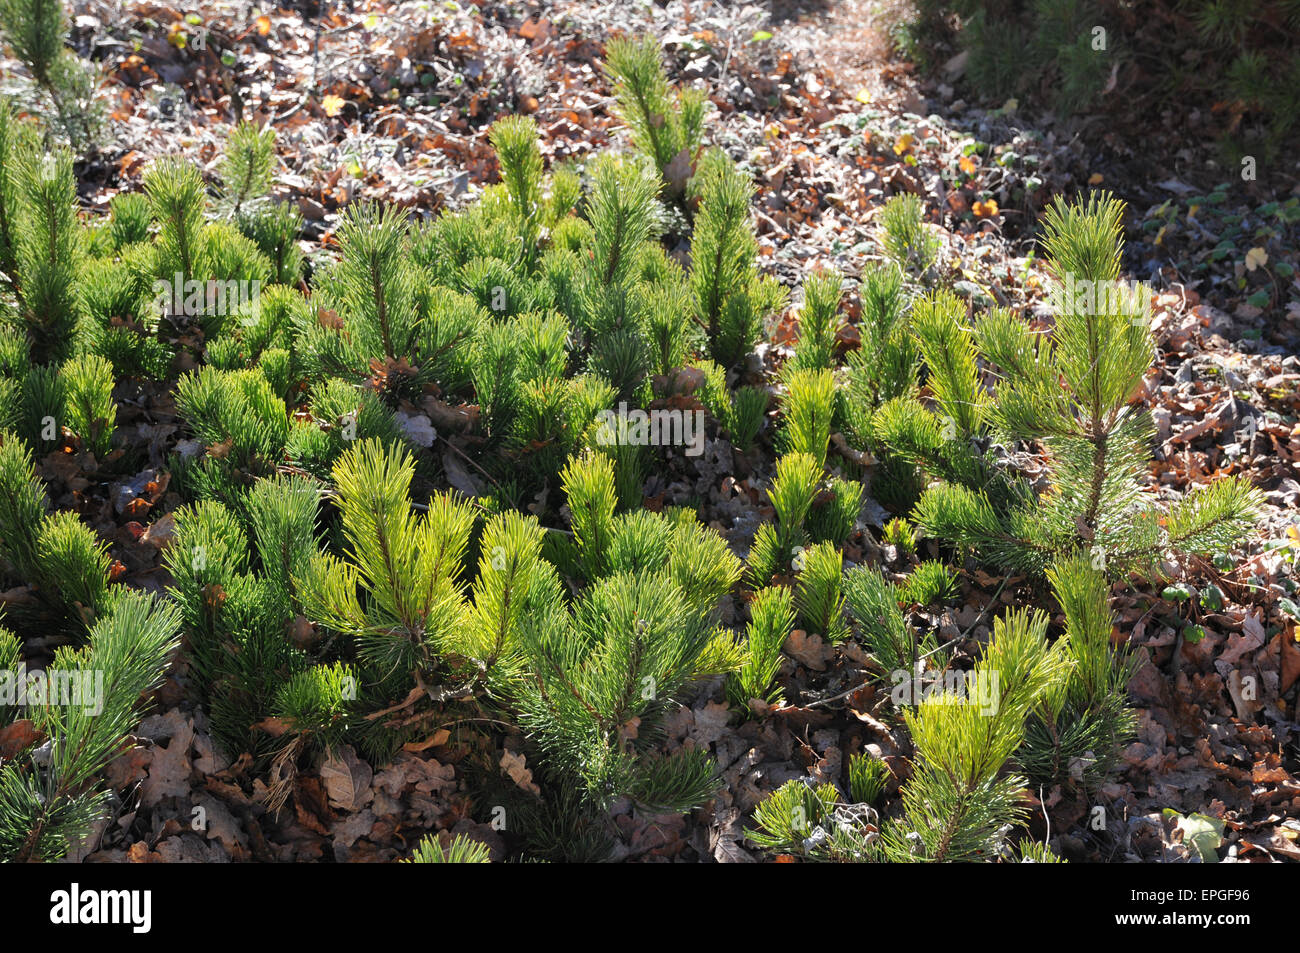 Mountain pine Stock Photo